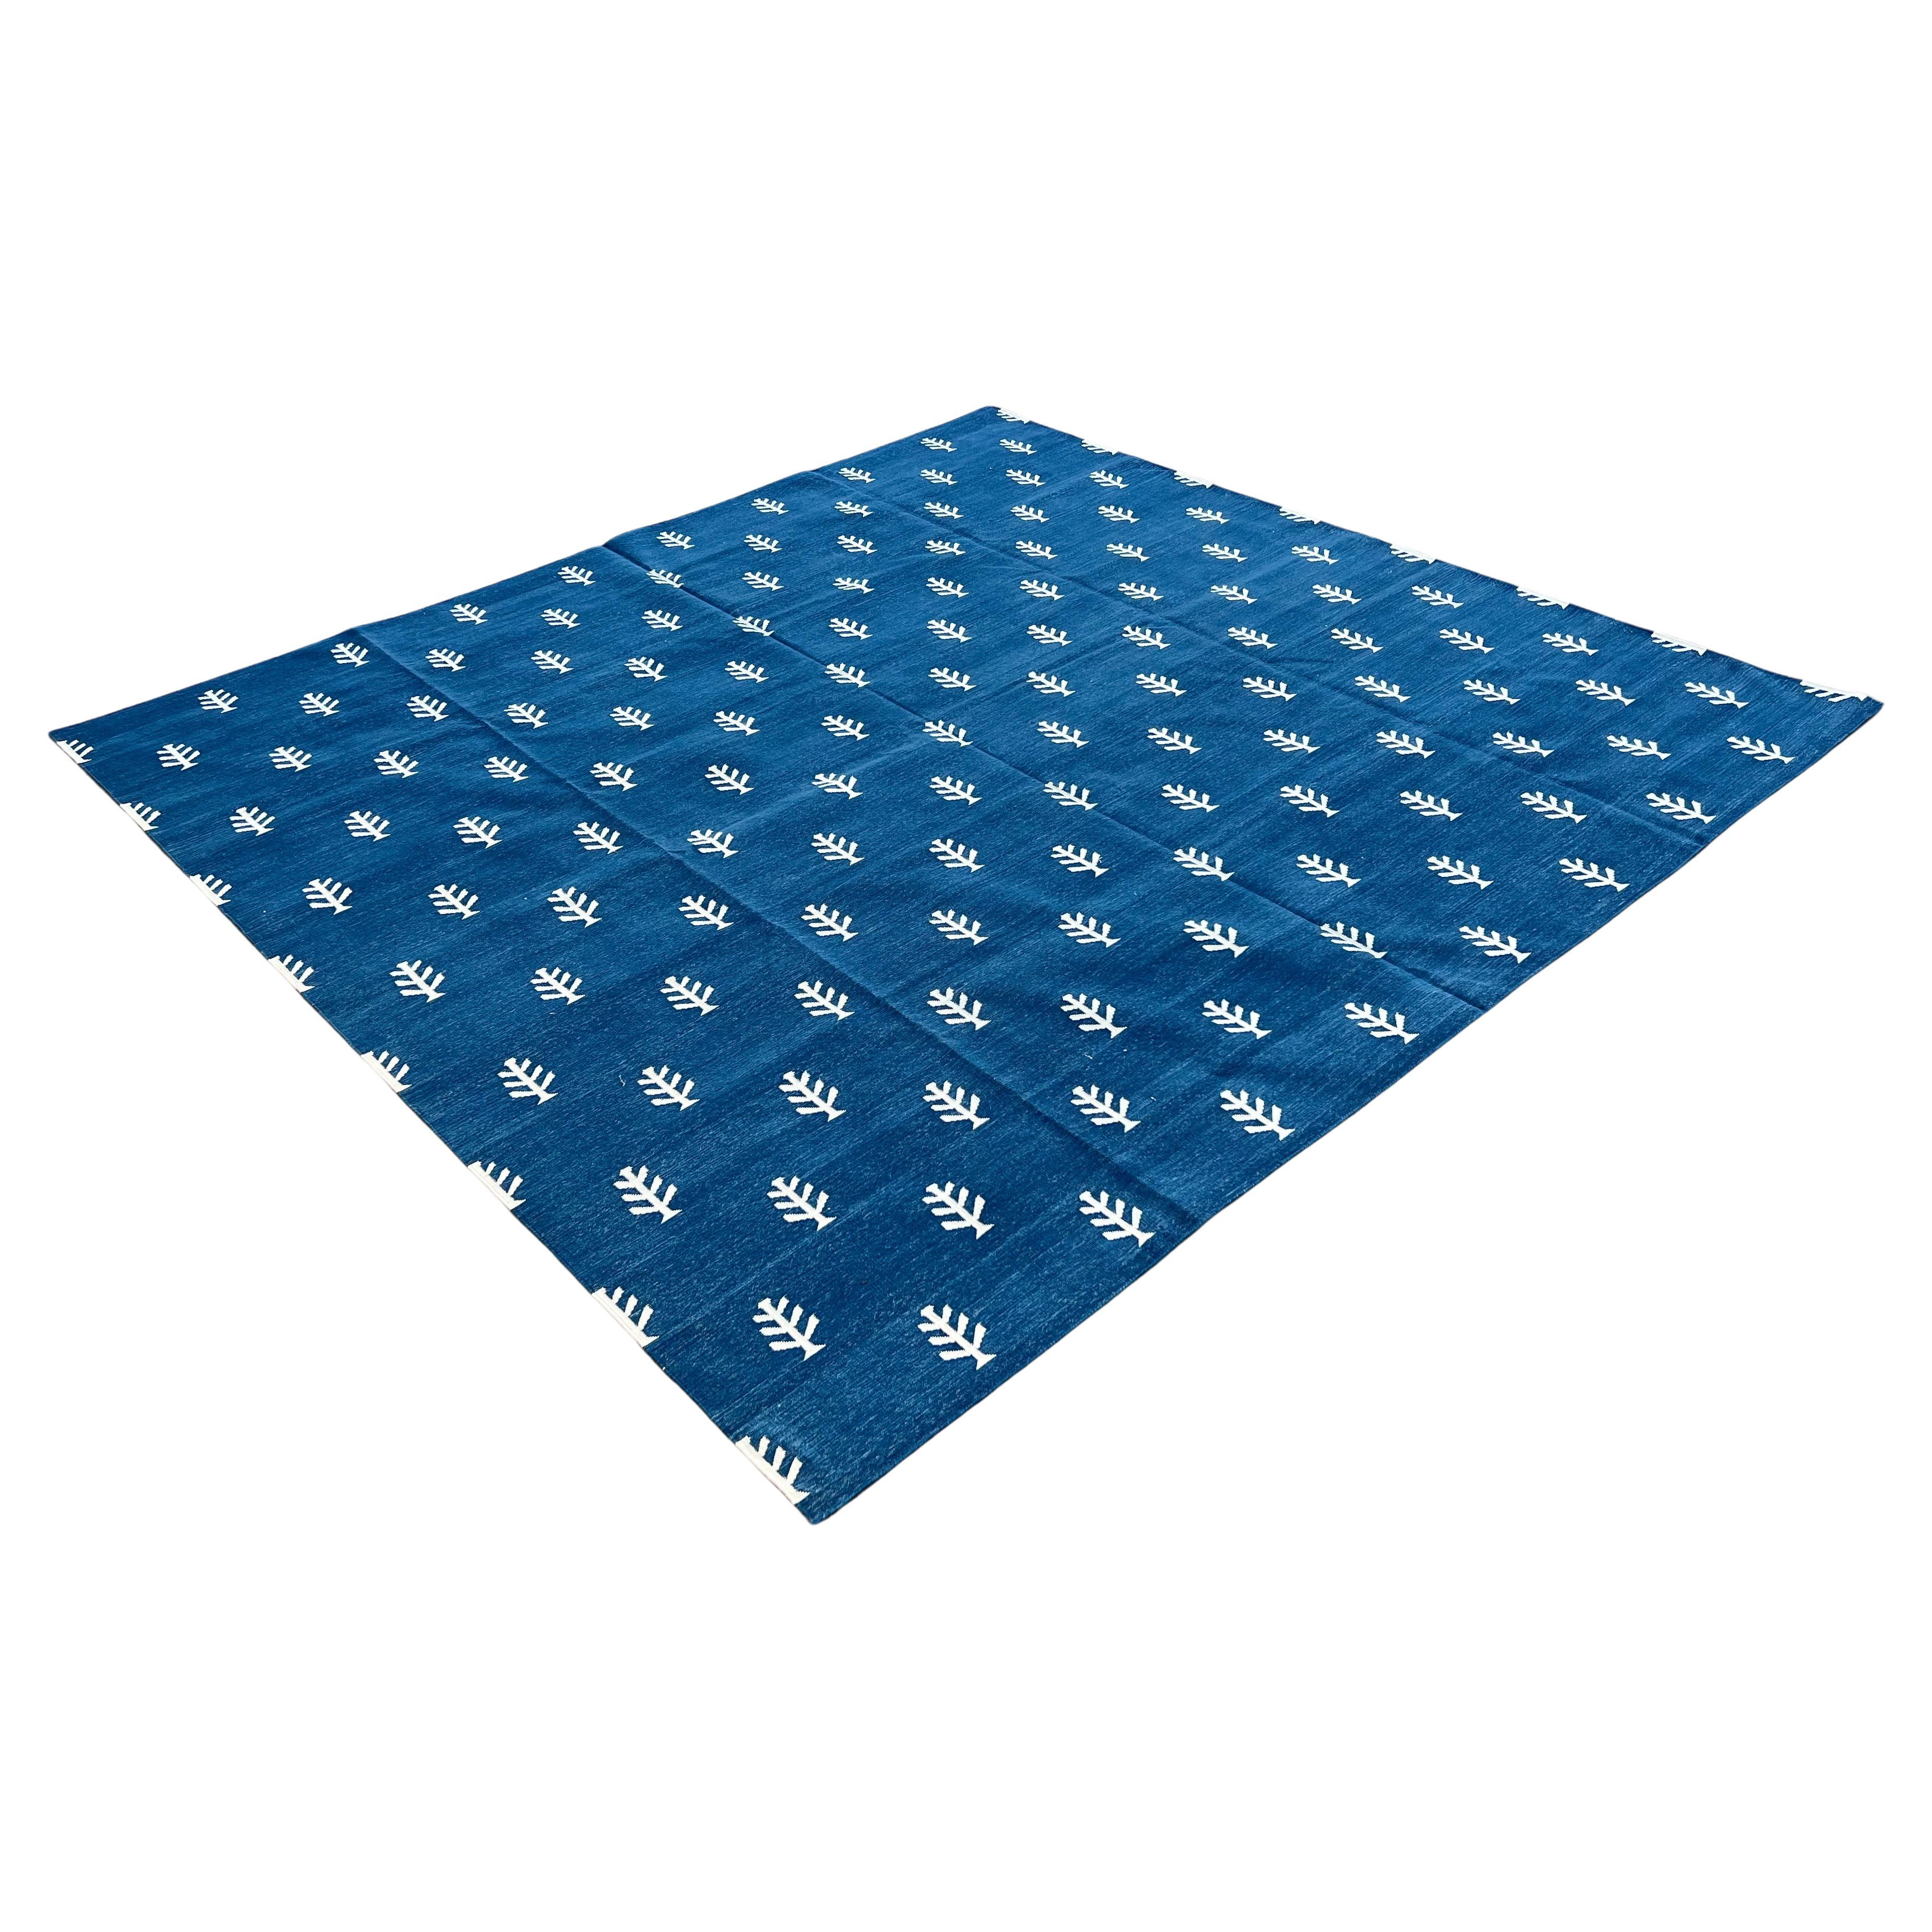 Baumwolle natürlich pflanzlich gefärbt Indigo blau und weiß Blatt gemustert indischen Teppich-6'x9'
Diese speziellen flachgewebten Dhurries werden aus 15-fachem Garn aus 100% Baumwolle handgewebt. Aufgrund der speziellen Fertigungstechniken, die zur